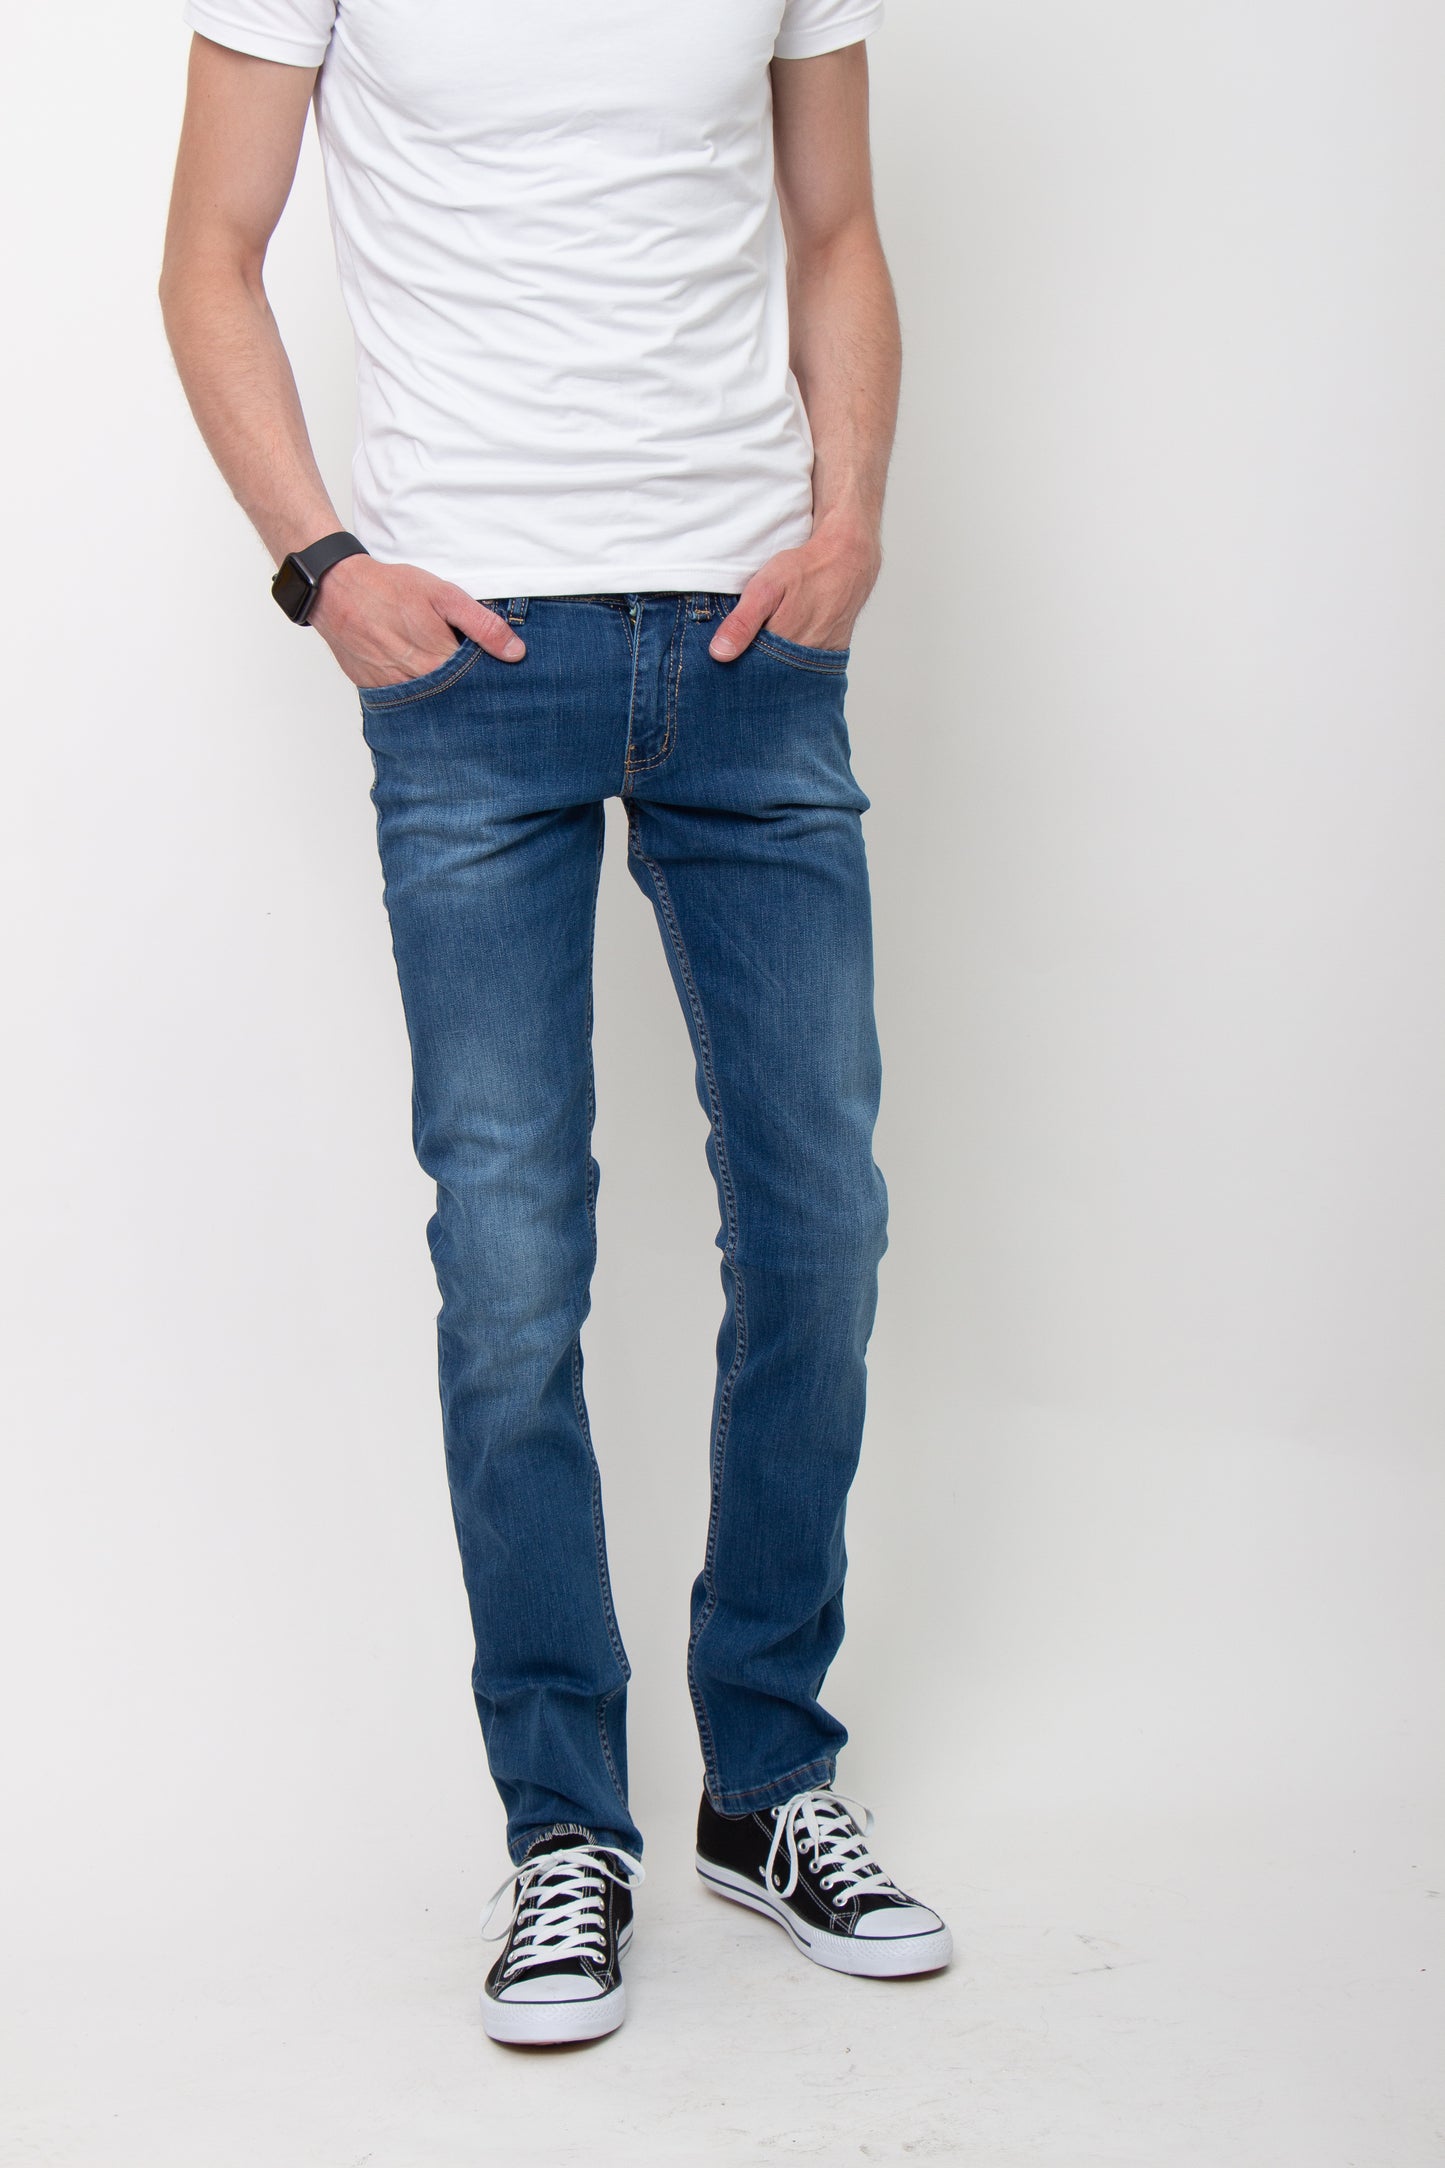 Helsinki Jeans